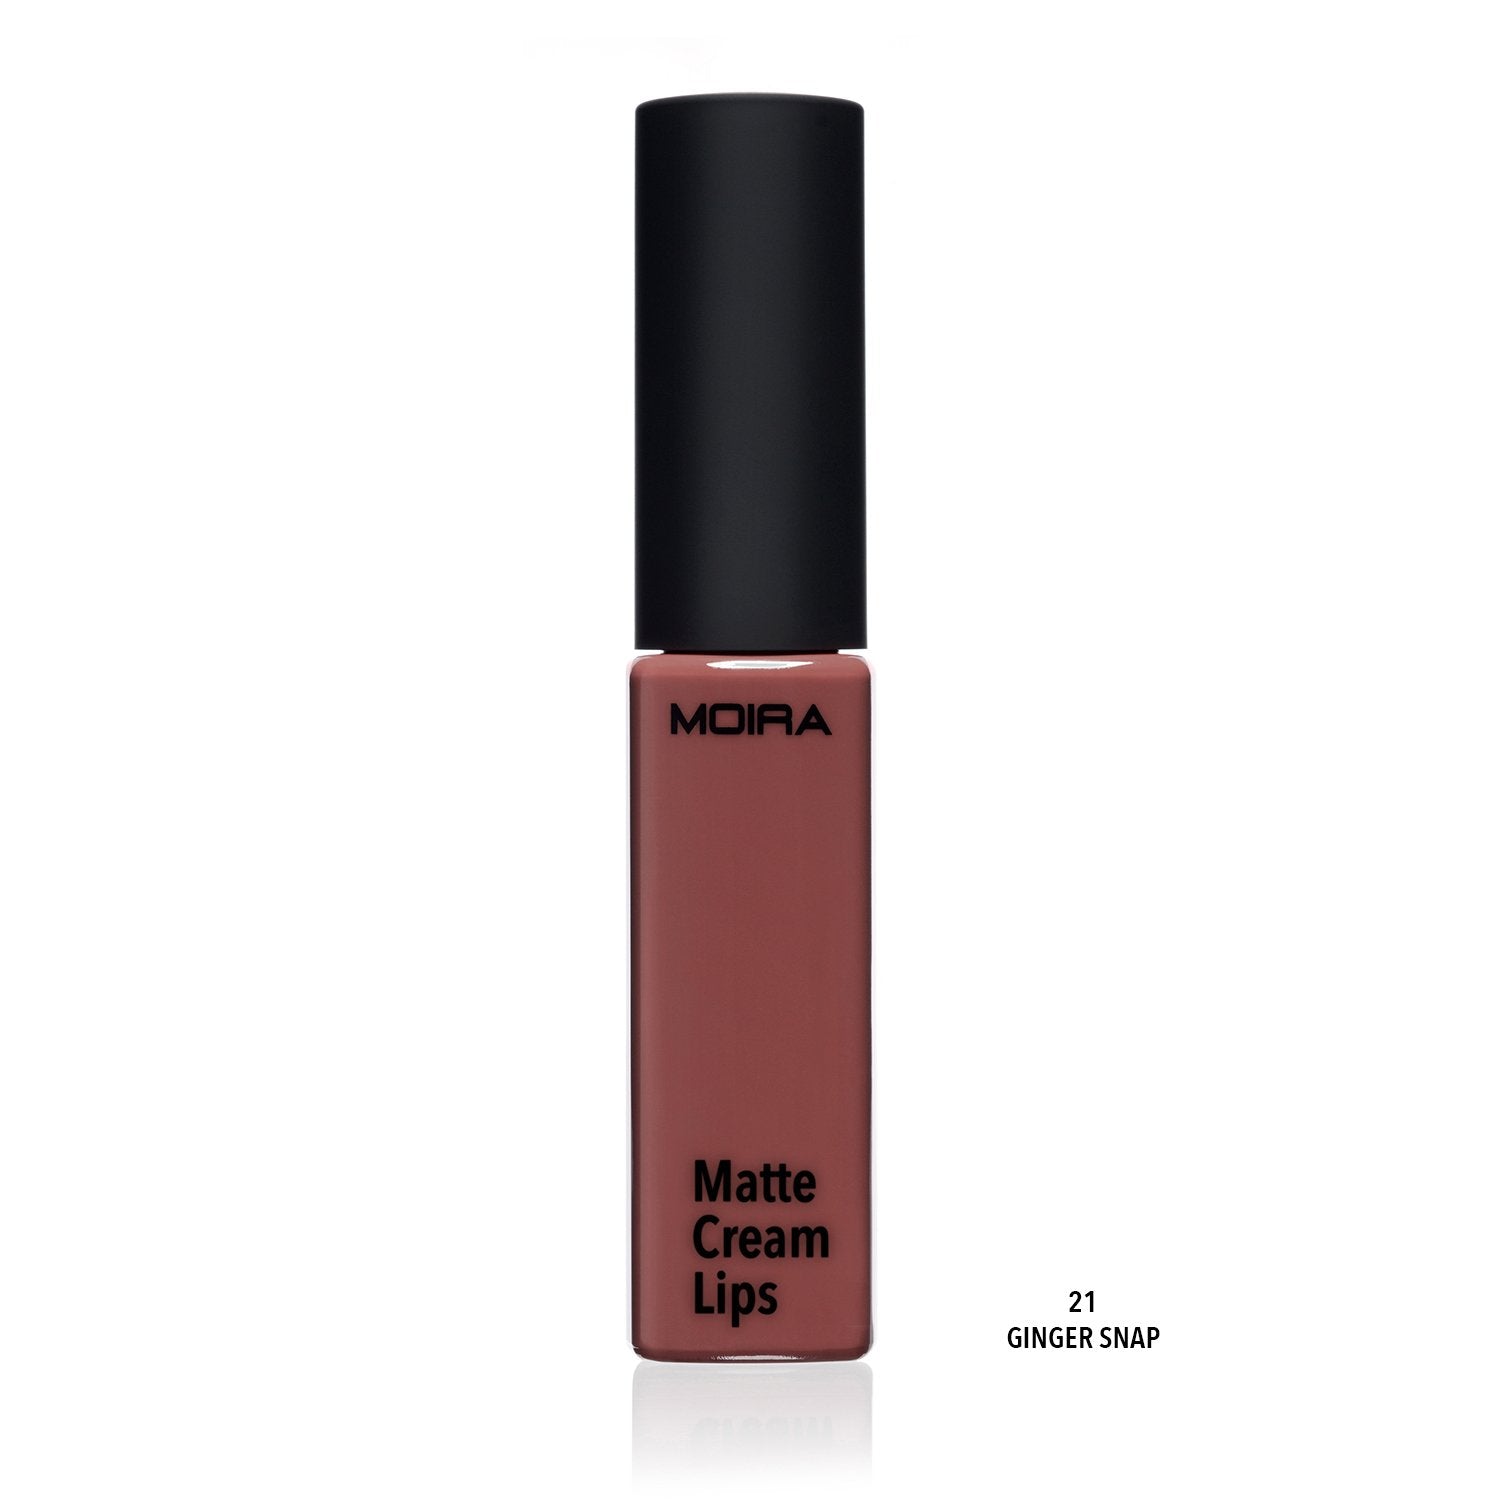 Matte Cream Lips (021, Ginger Snap)